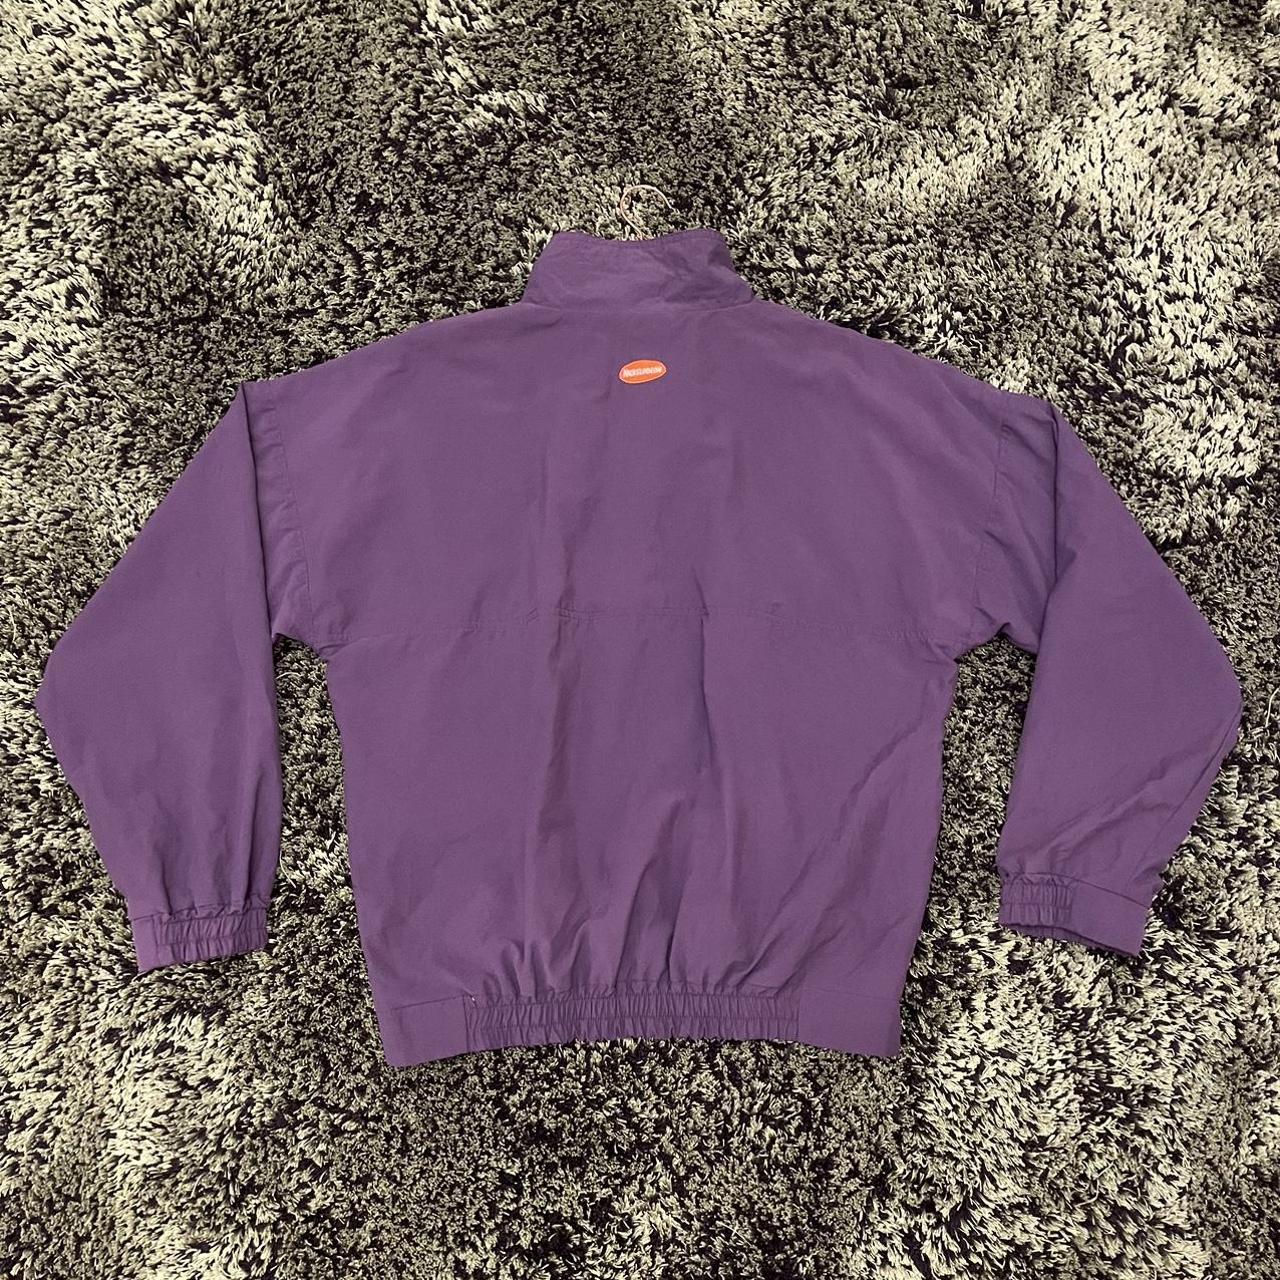 Nickelodeon Men's Burgundy and Purple Jacket | Depop